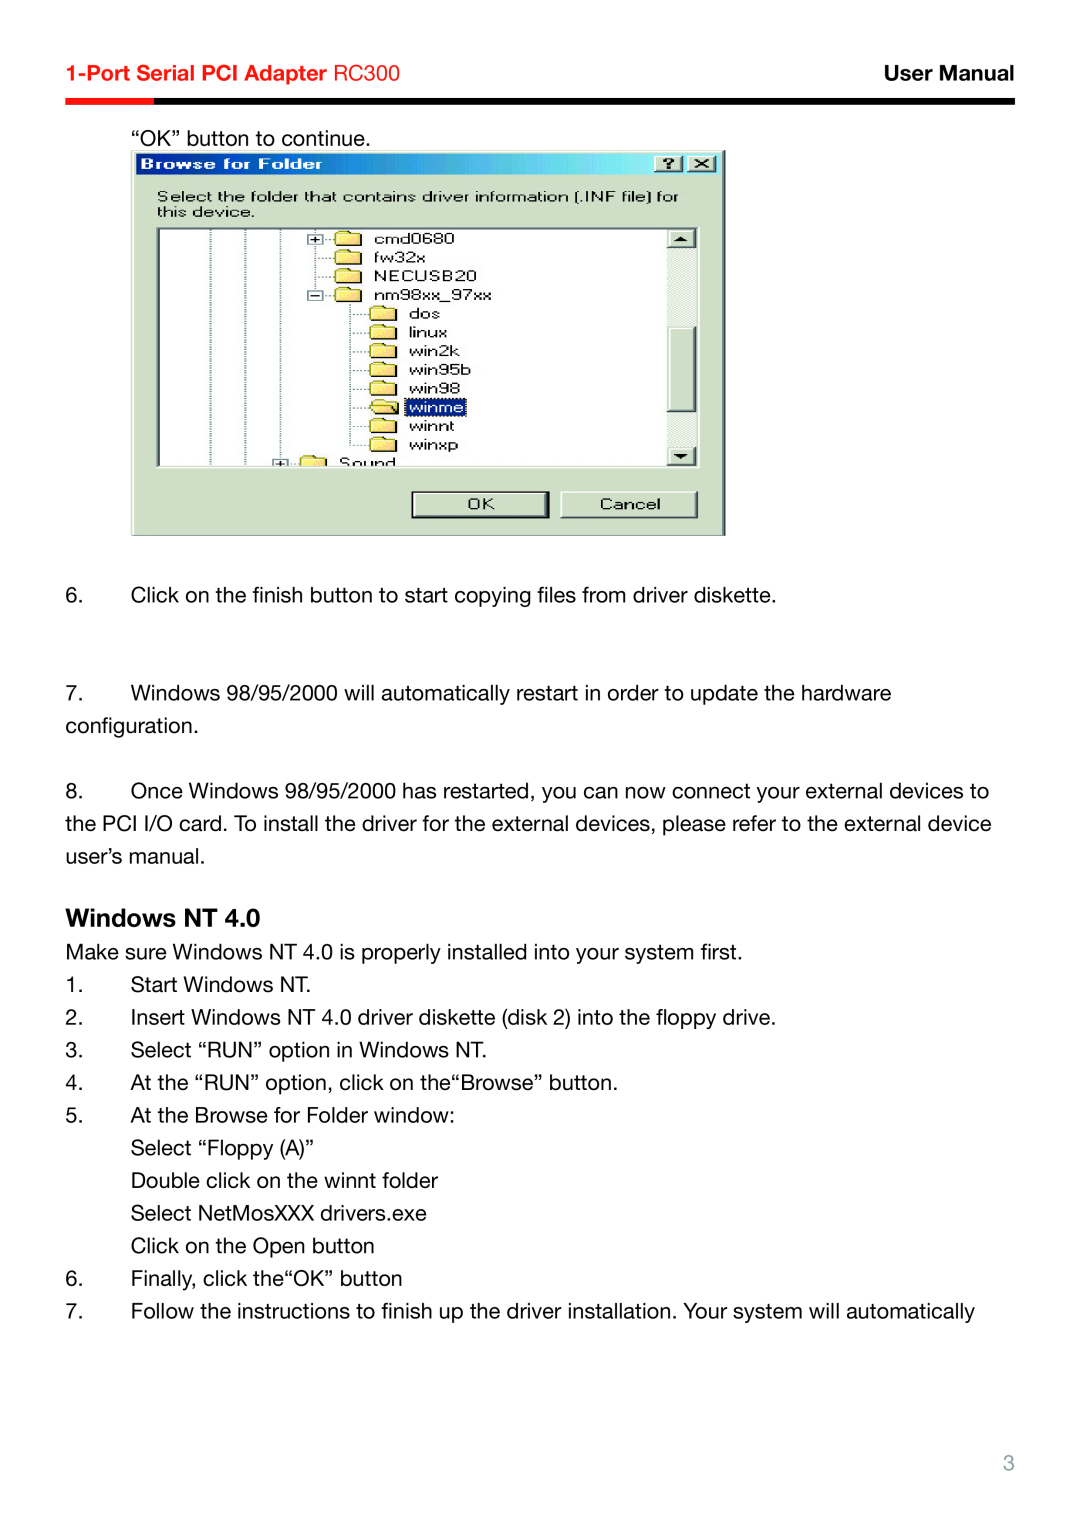 Rosewill RC-300 user manual Windows NT, Port Serial PCI Adapter RC300, User Manual 